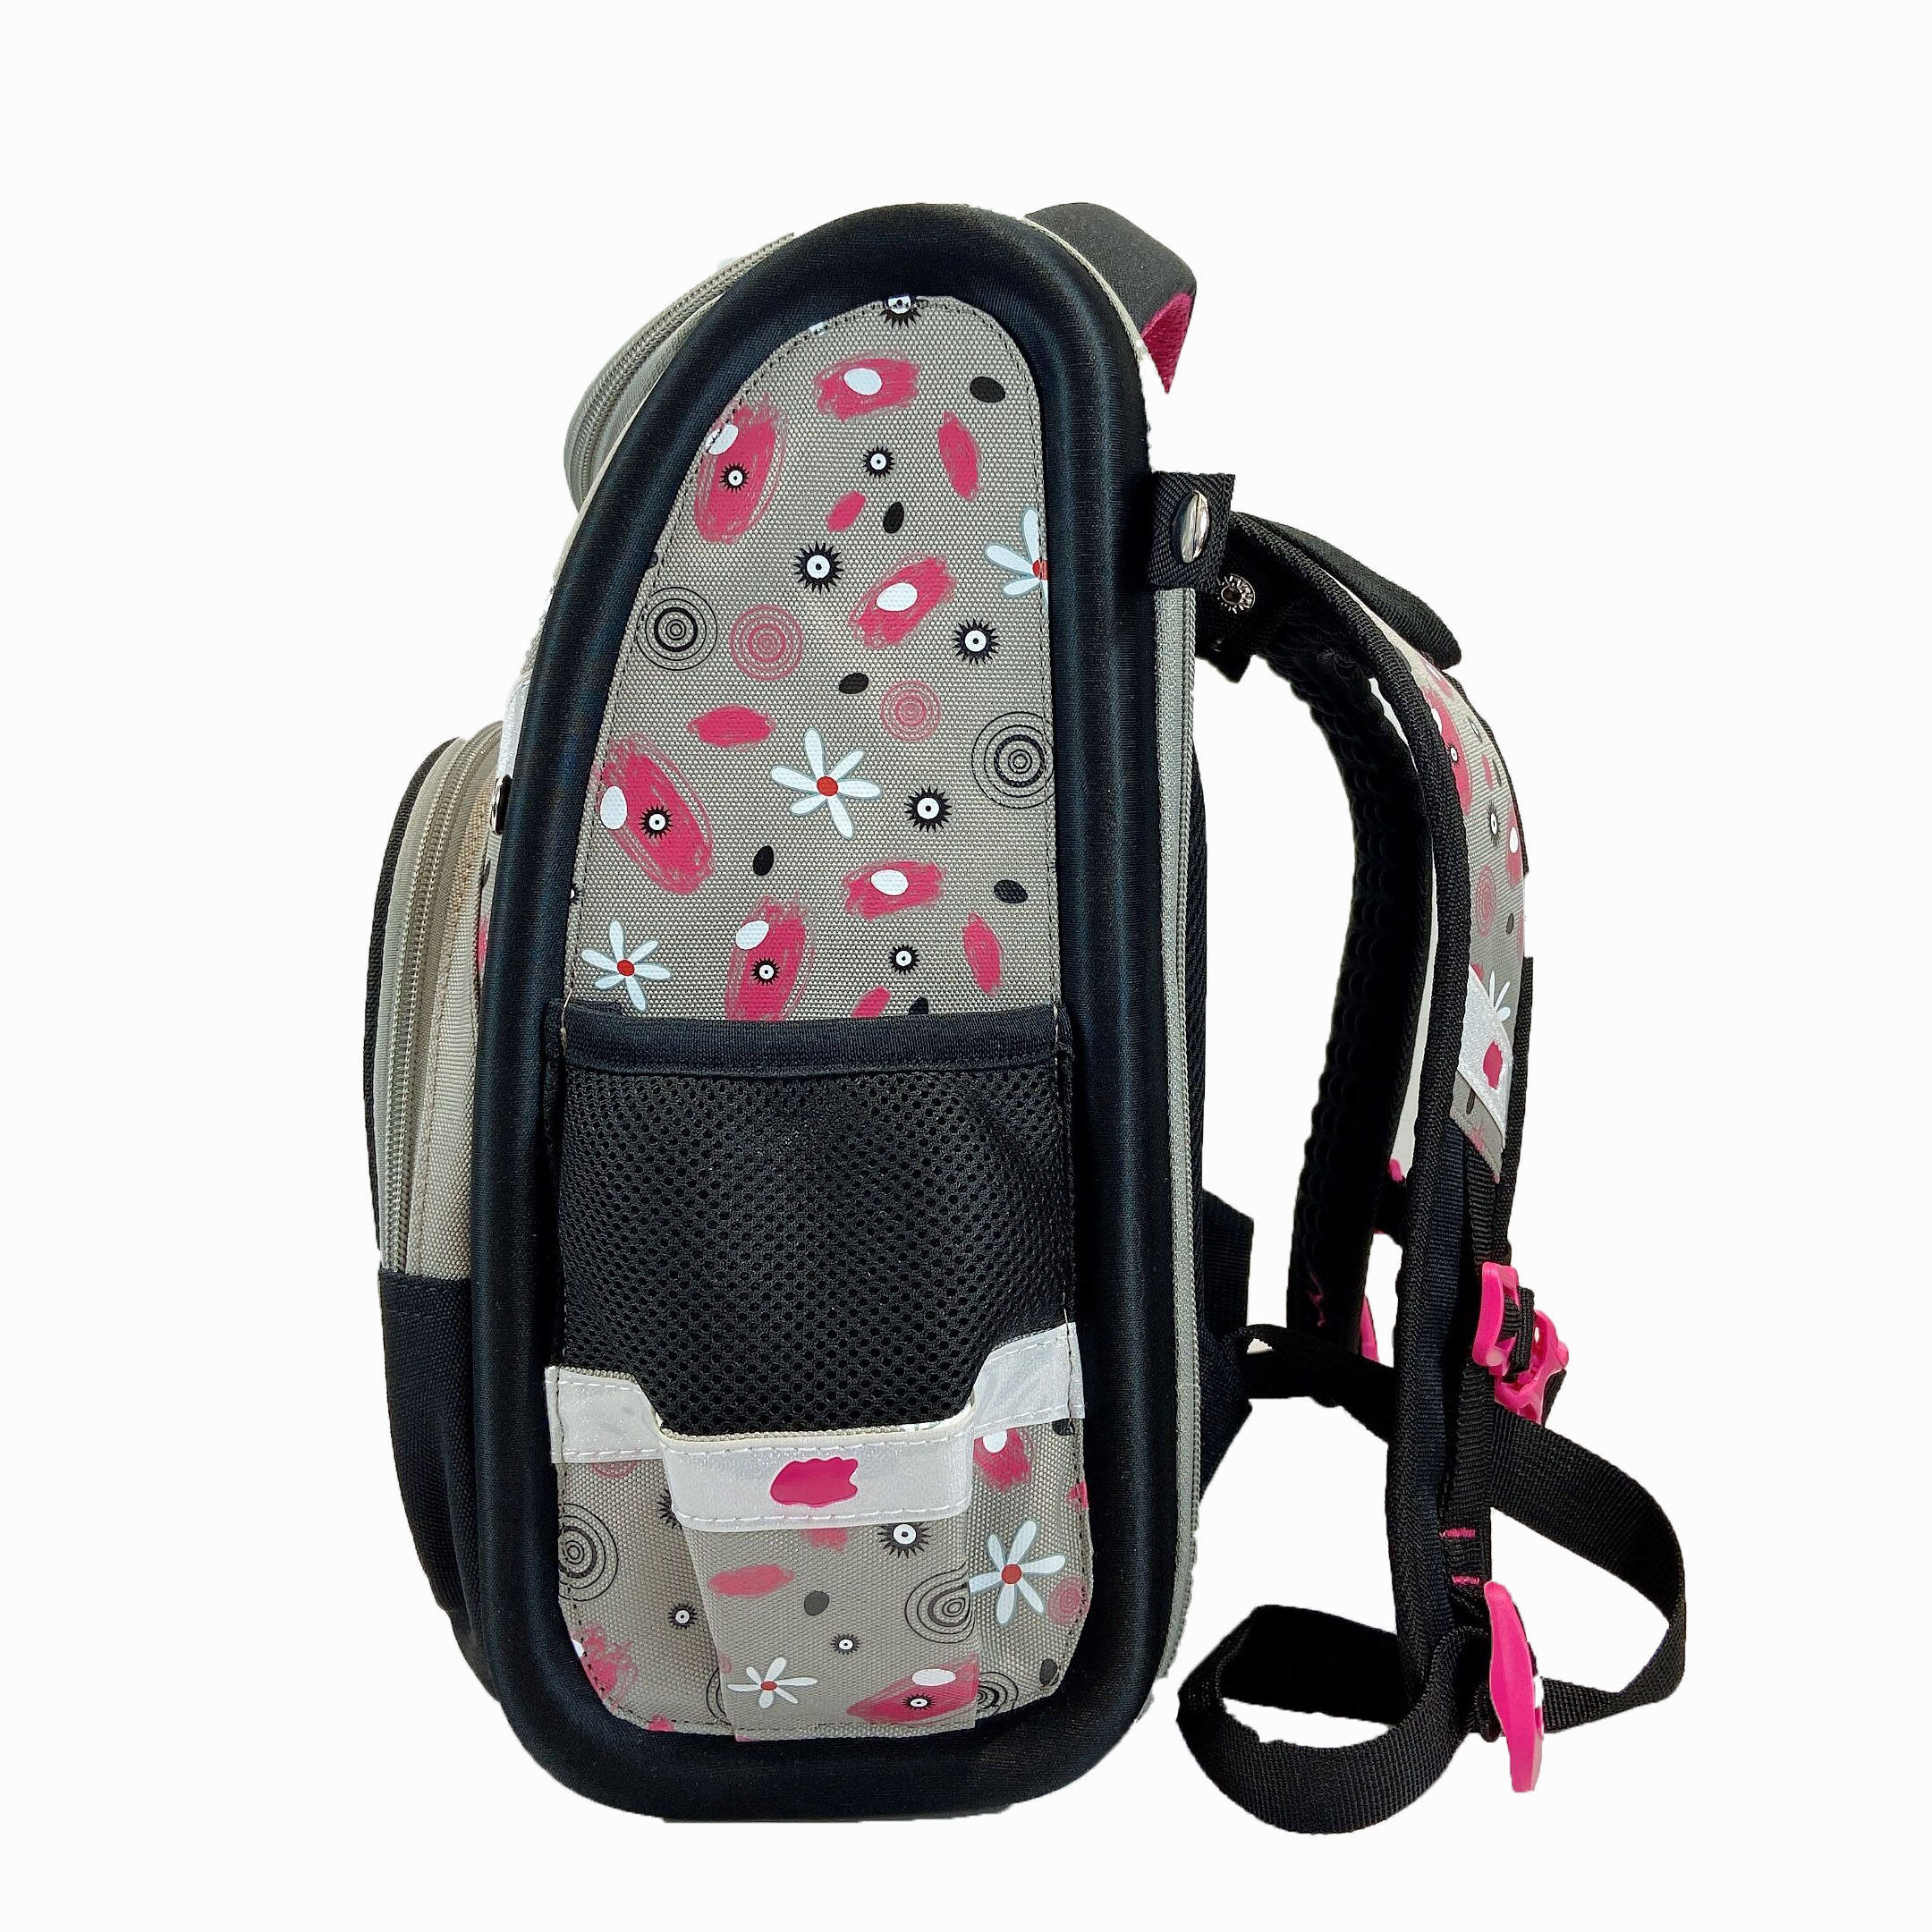 3D Digital Printing Backpack Cartoon Leisure Bag School Bags Customized Kids Backpacks Wheeled Backpack Backpack Girl Boys